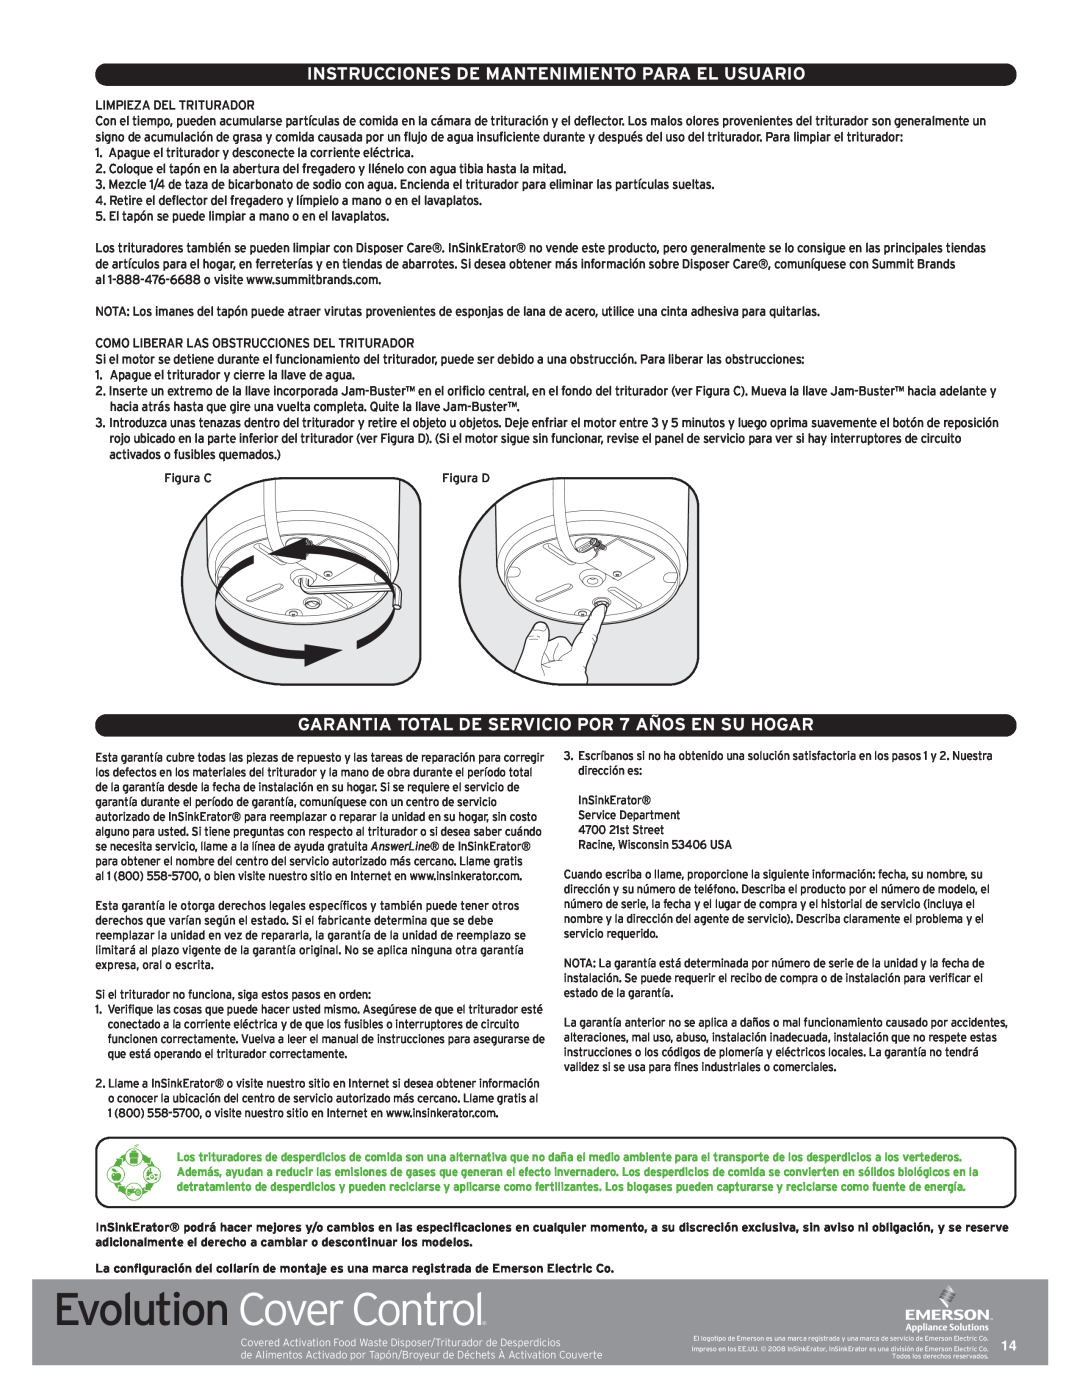 InSinkErator Evolution Series manual Instrucciones De Mantenimiento Para El Usuario, Evolution Cover Control 